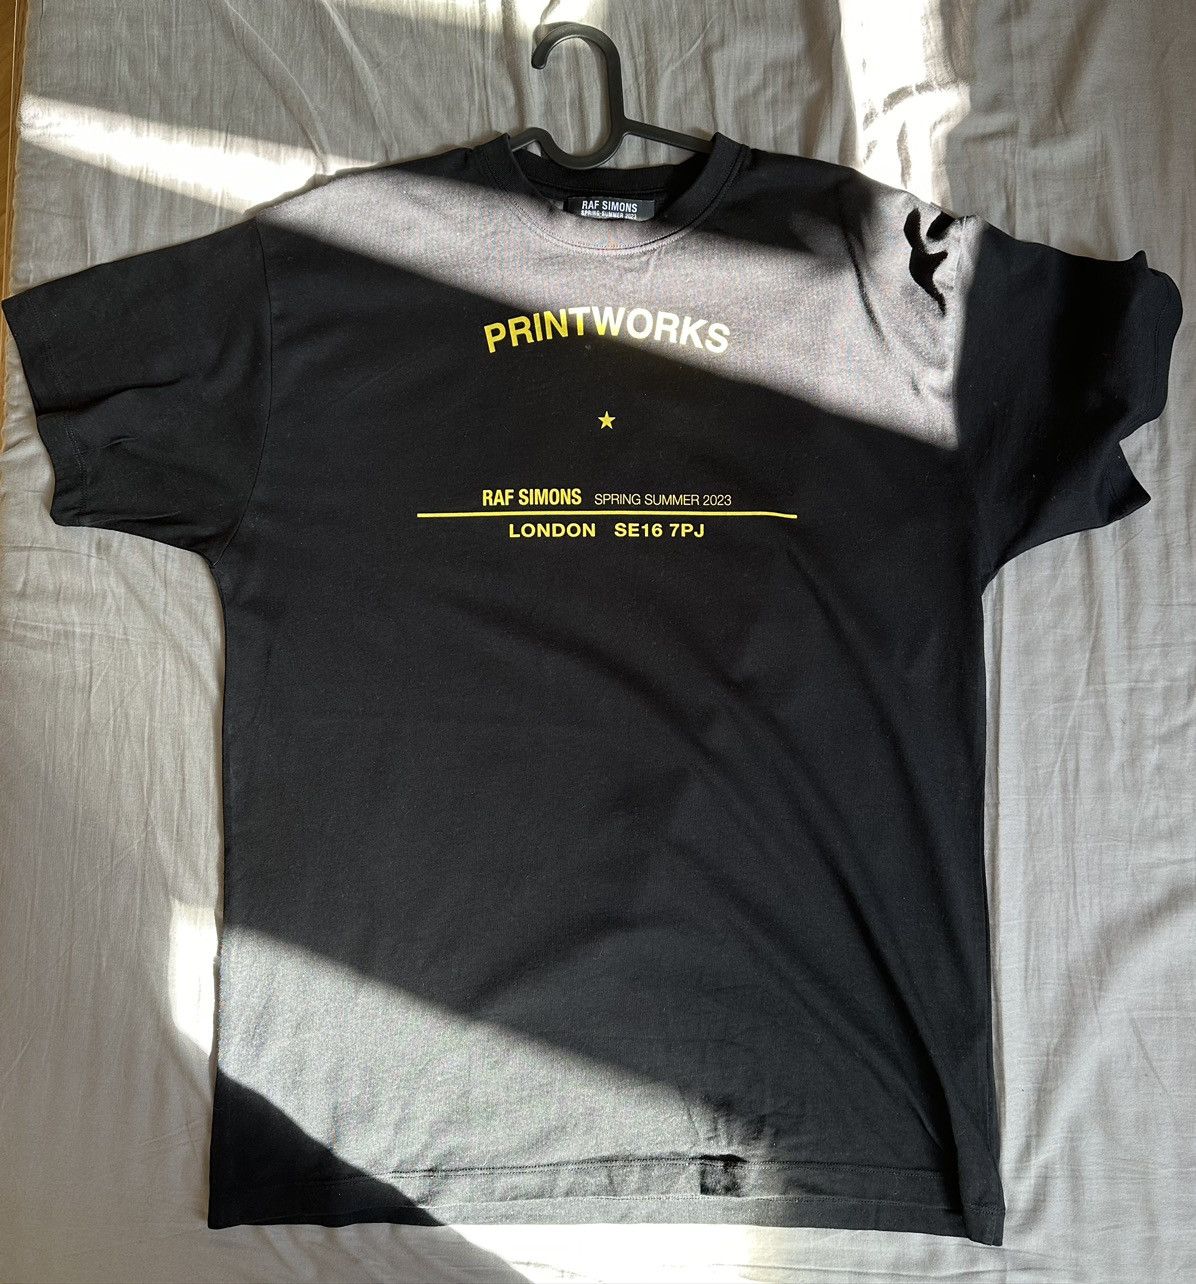 Raf Simons Raf Simons printworks tour t-shirt | Grailed